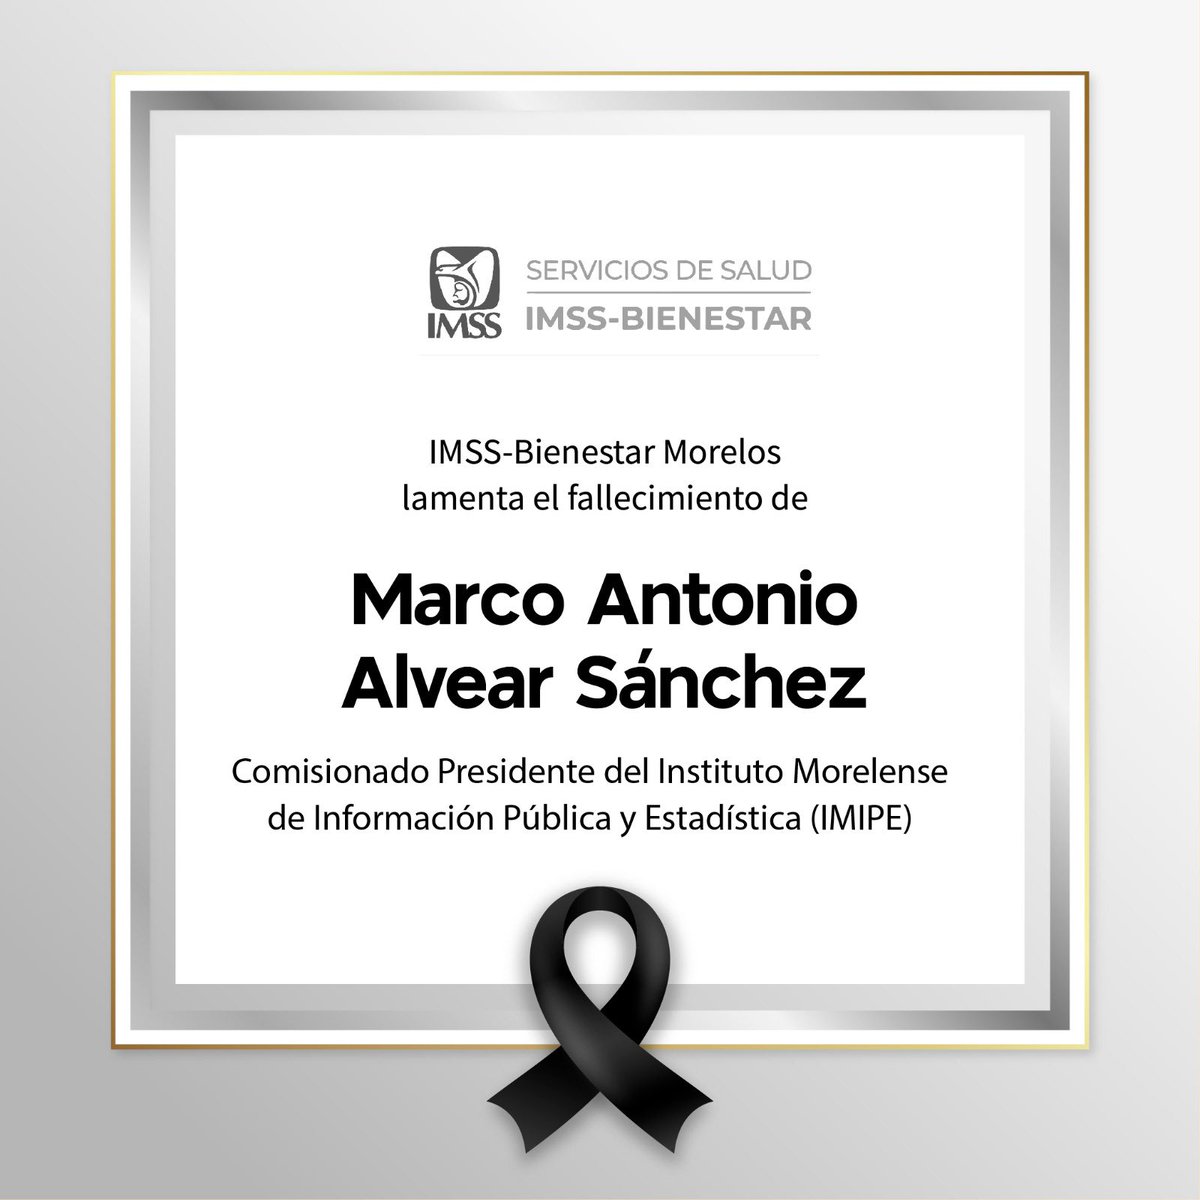 Lamento el sensible fallecimiento de nuestro amigo Marco Antonio Alvear Sánchez, comisionado presidente del @_IMIPE. Mi más sentido pésame a sus familiares. Descanse en paz.